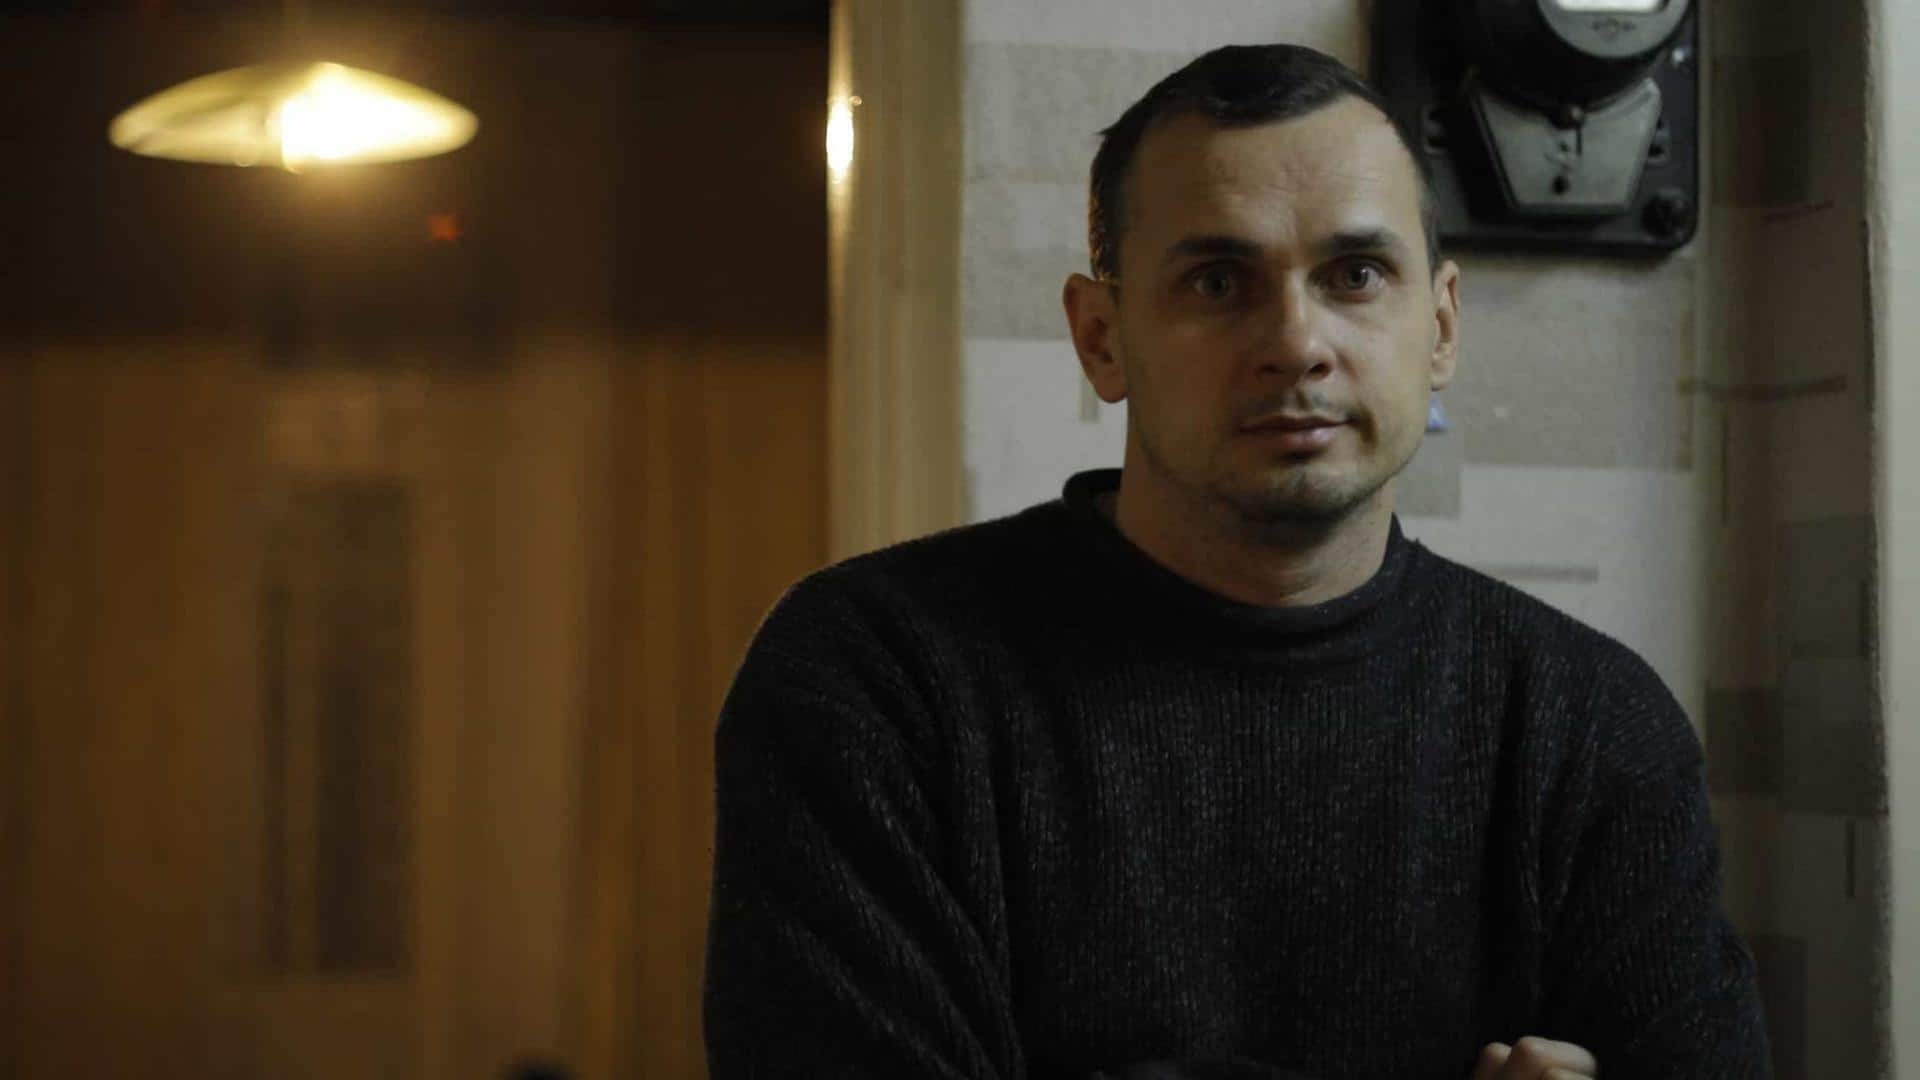 Ukrainian filmmaker Oleg Sentsov sustains shrapnel injury; shares update